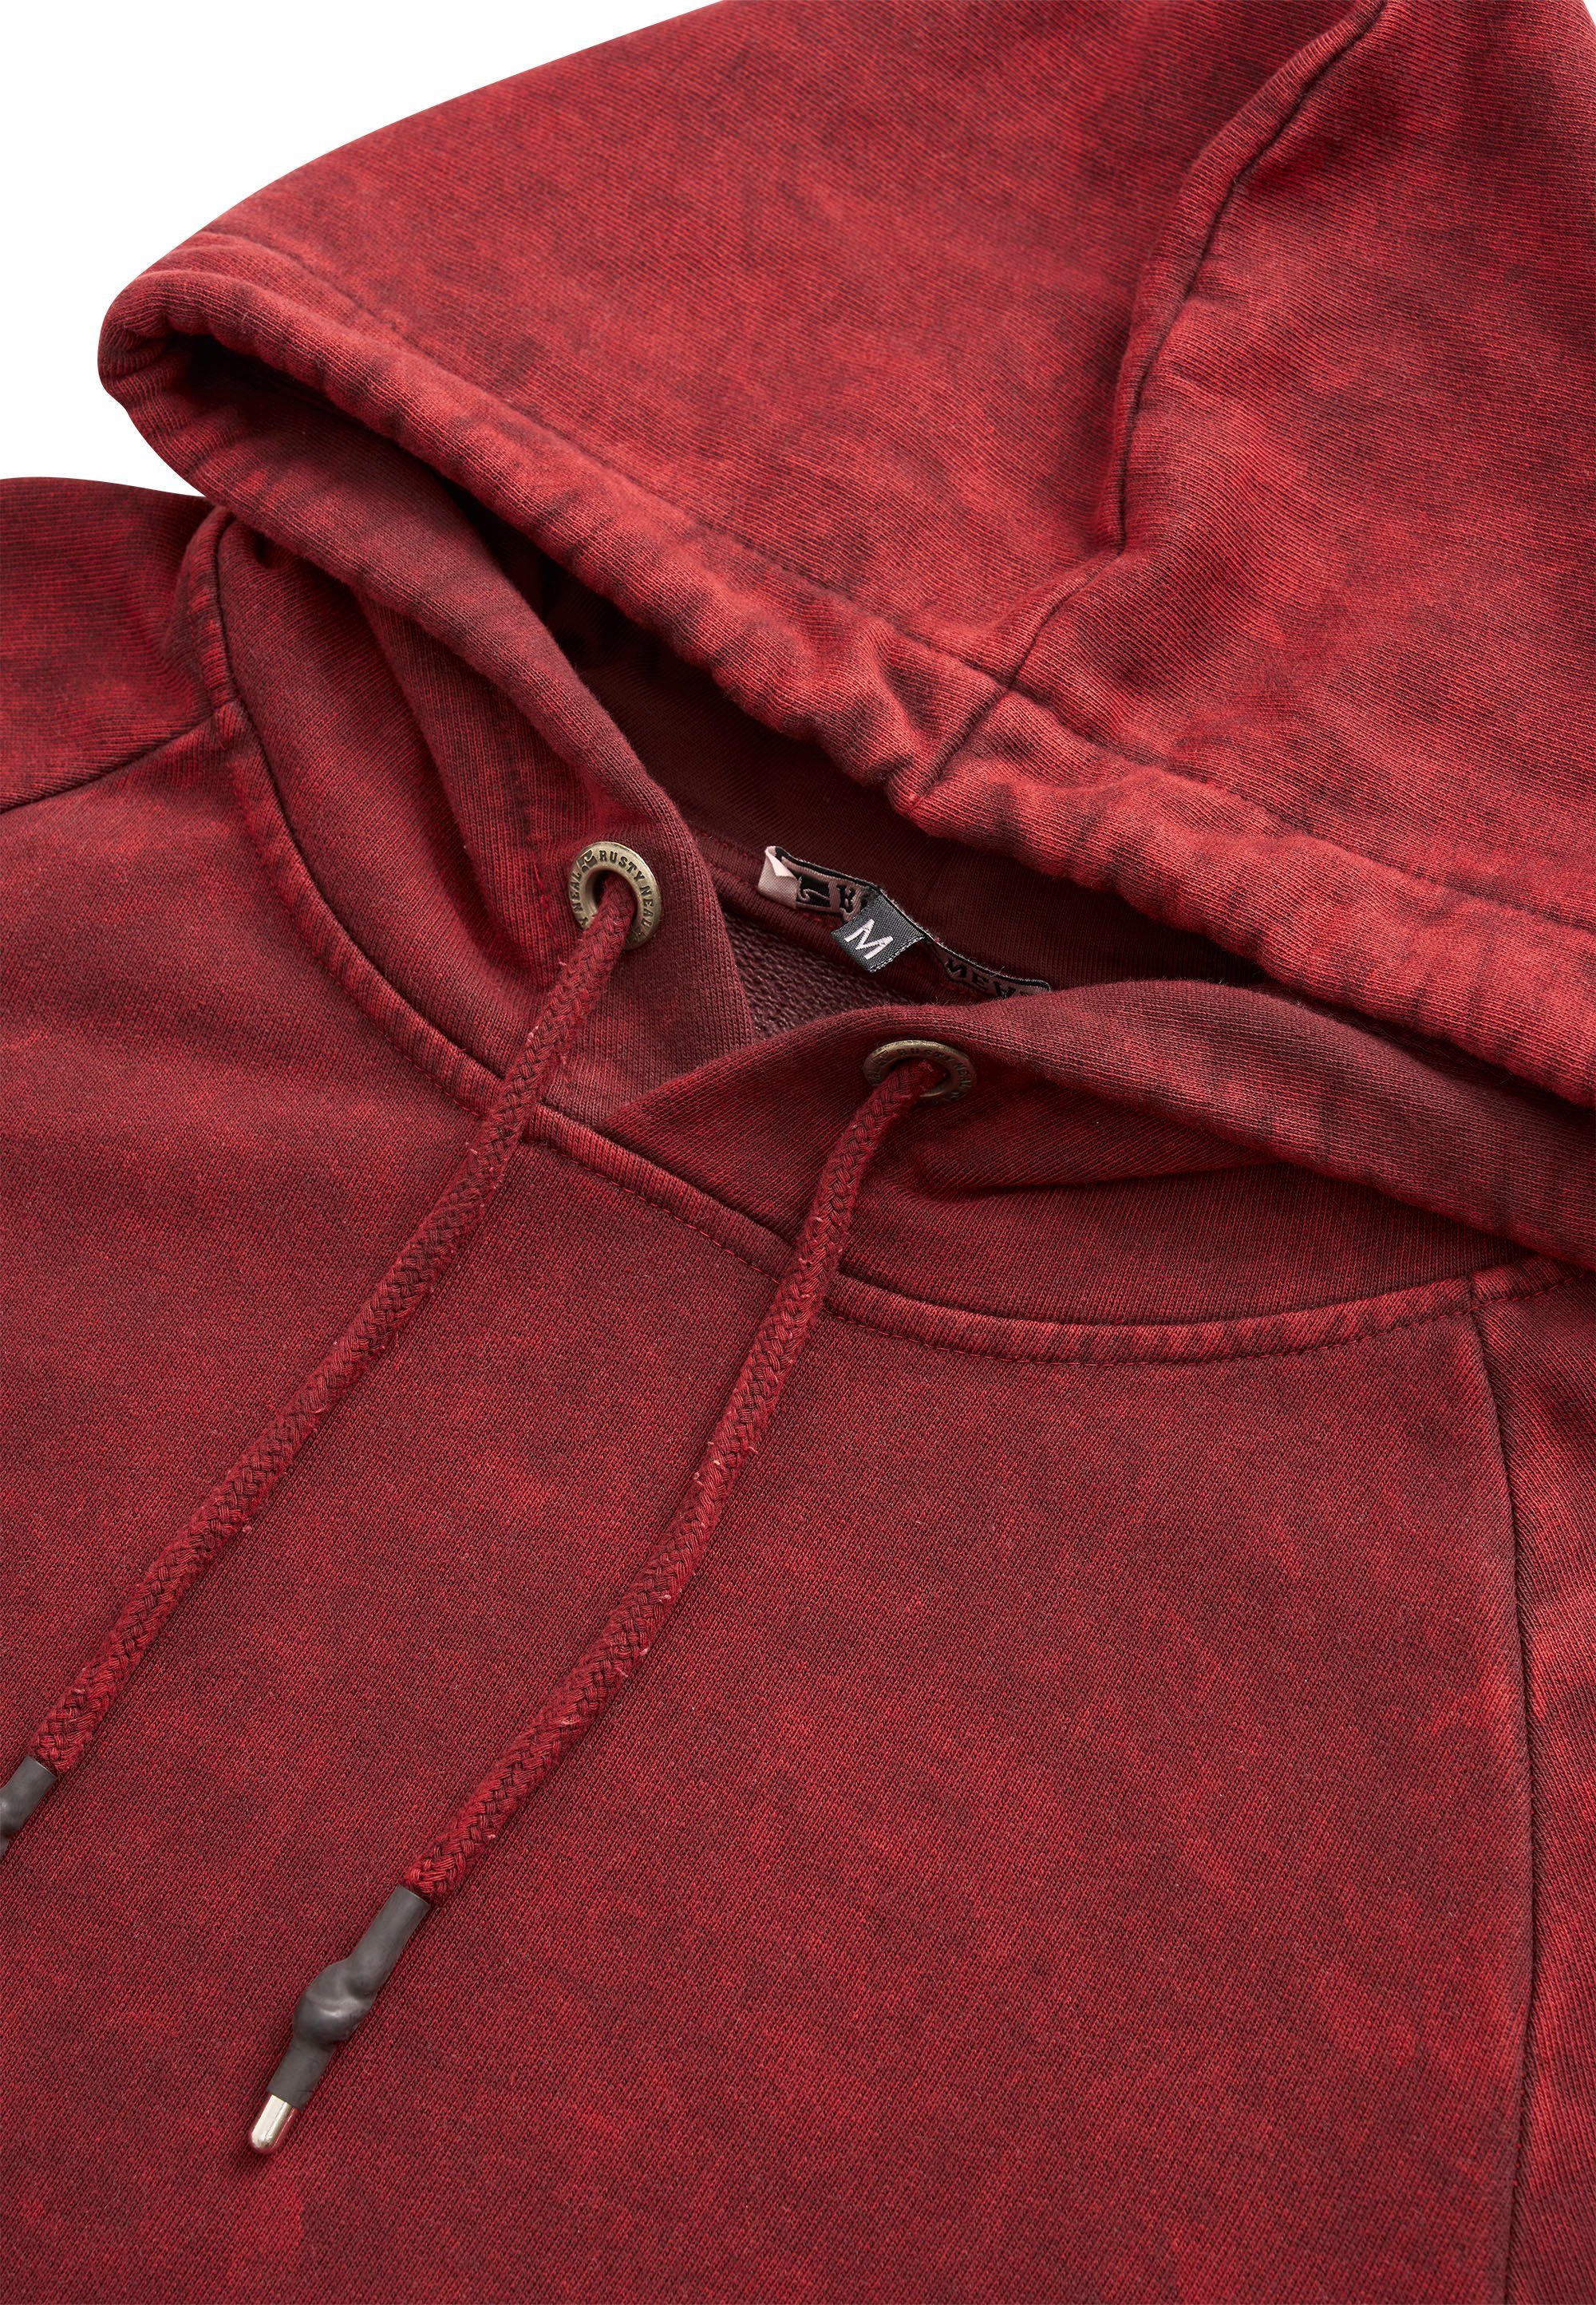 Neal Rusty Kapuzensweatshirt in rot verwaschenem Design